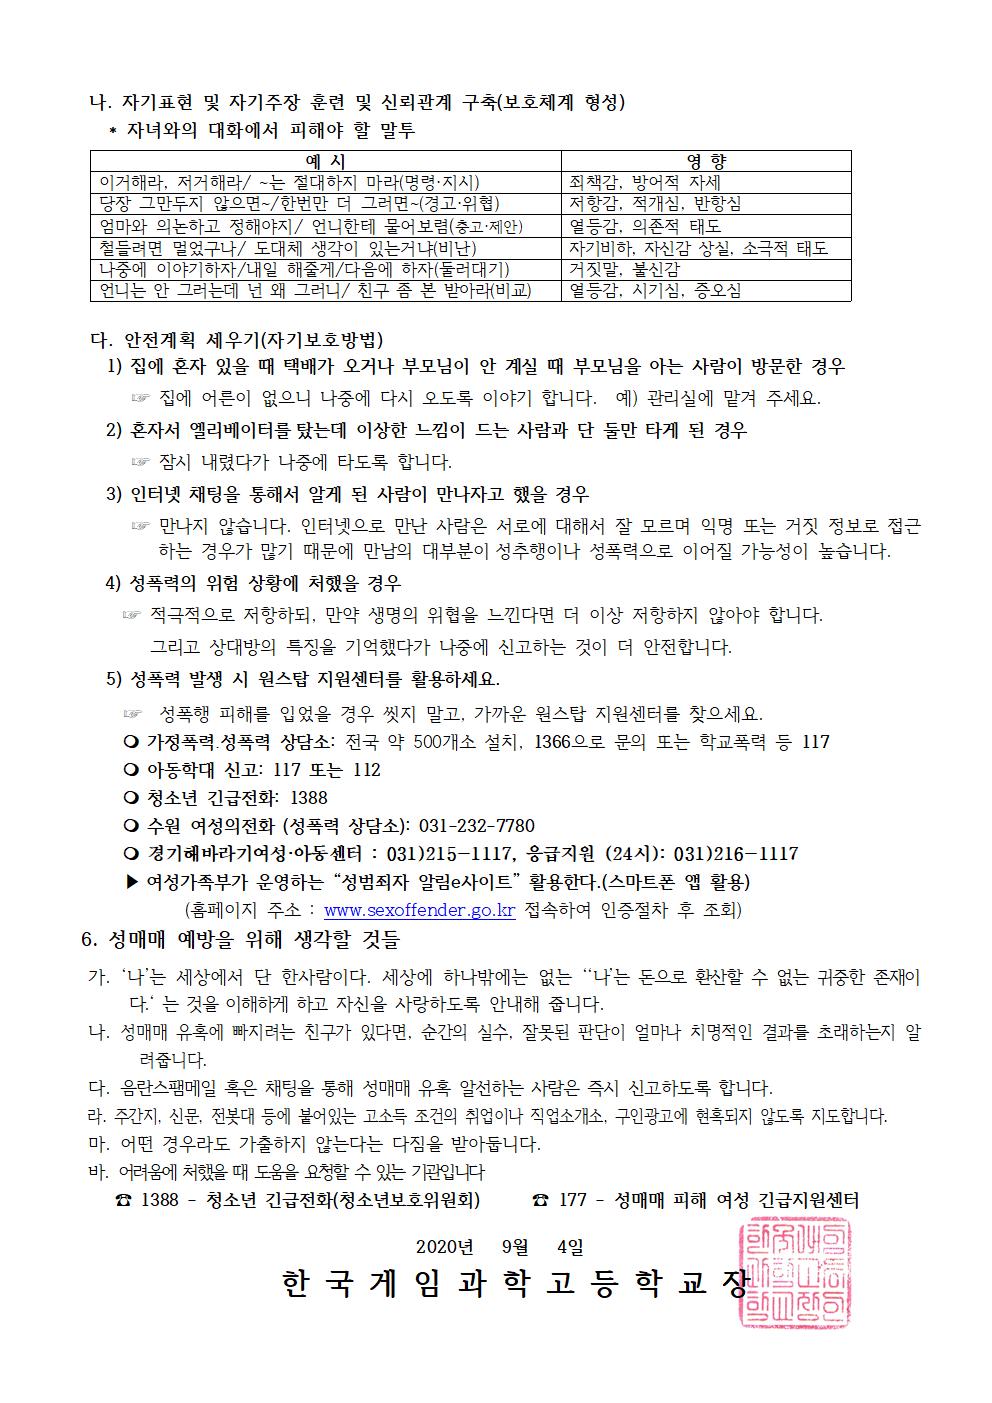 2020 성폭력예방교육 가정통신문002